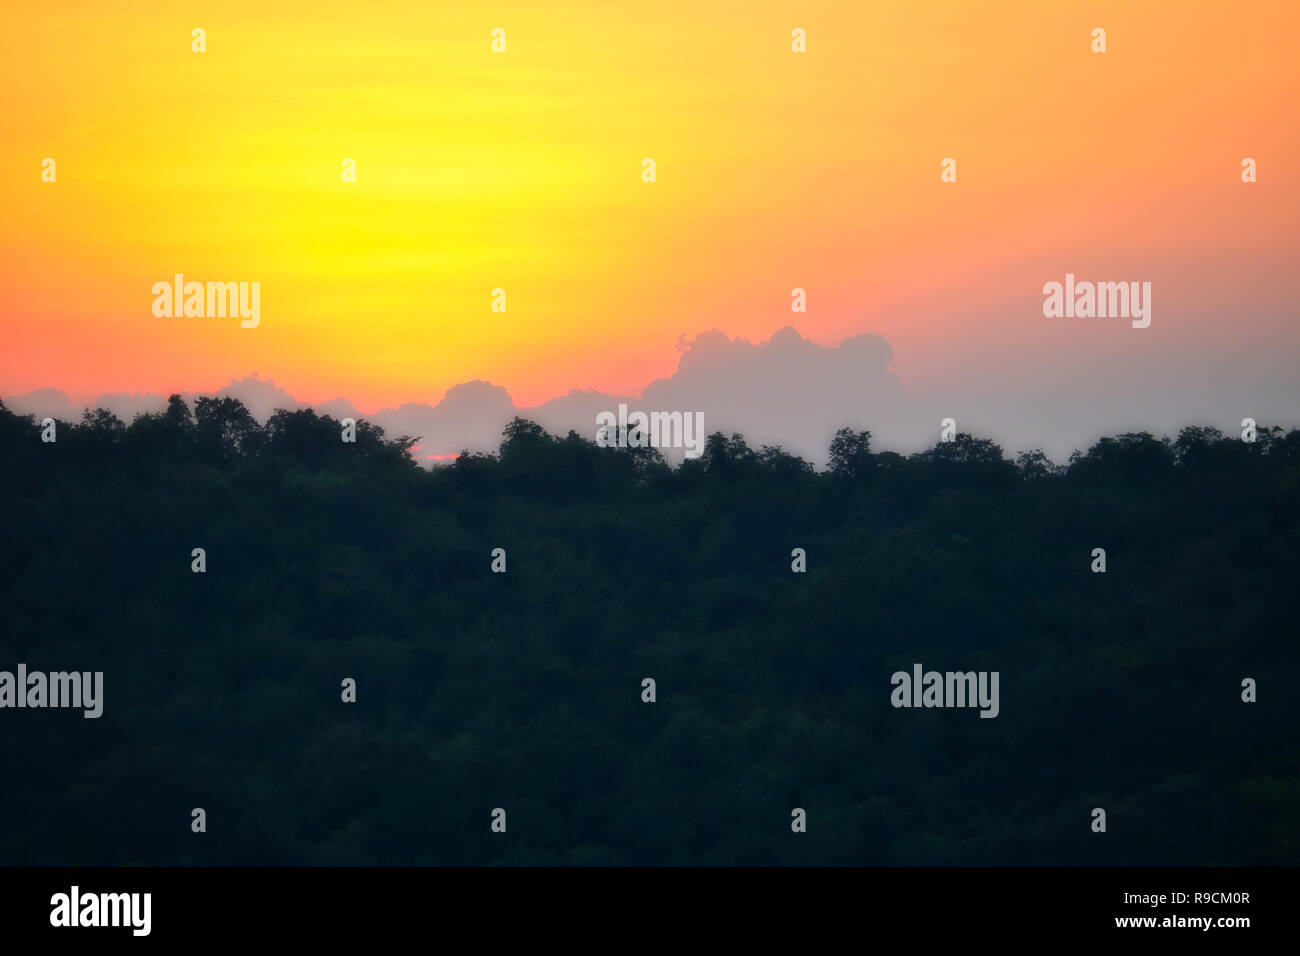 Cette image montre le magnifique coucher de soleil rouge avec une grande formation de nuages derrière les montagnes de Hua Hin en Thaïlande Banque D'Images